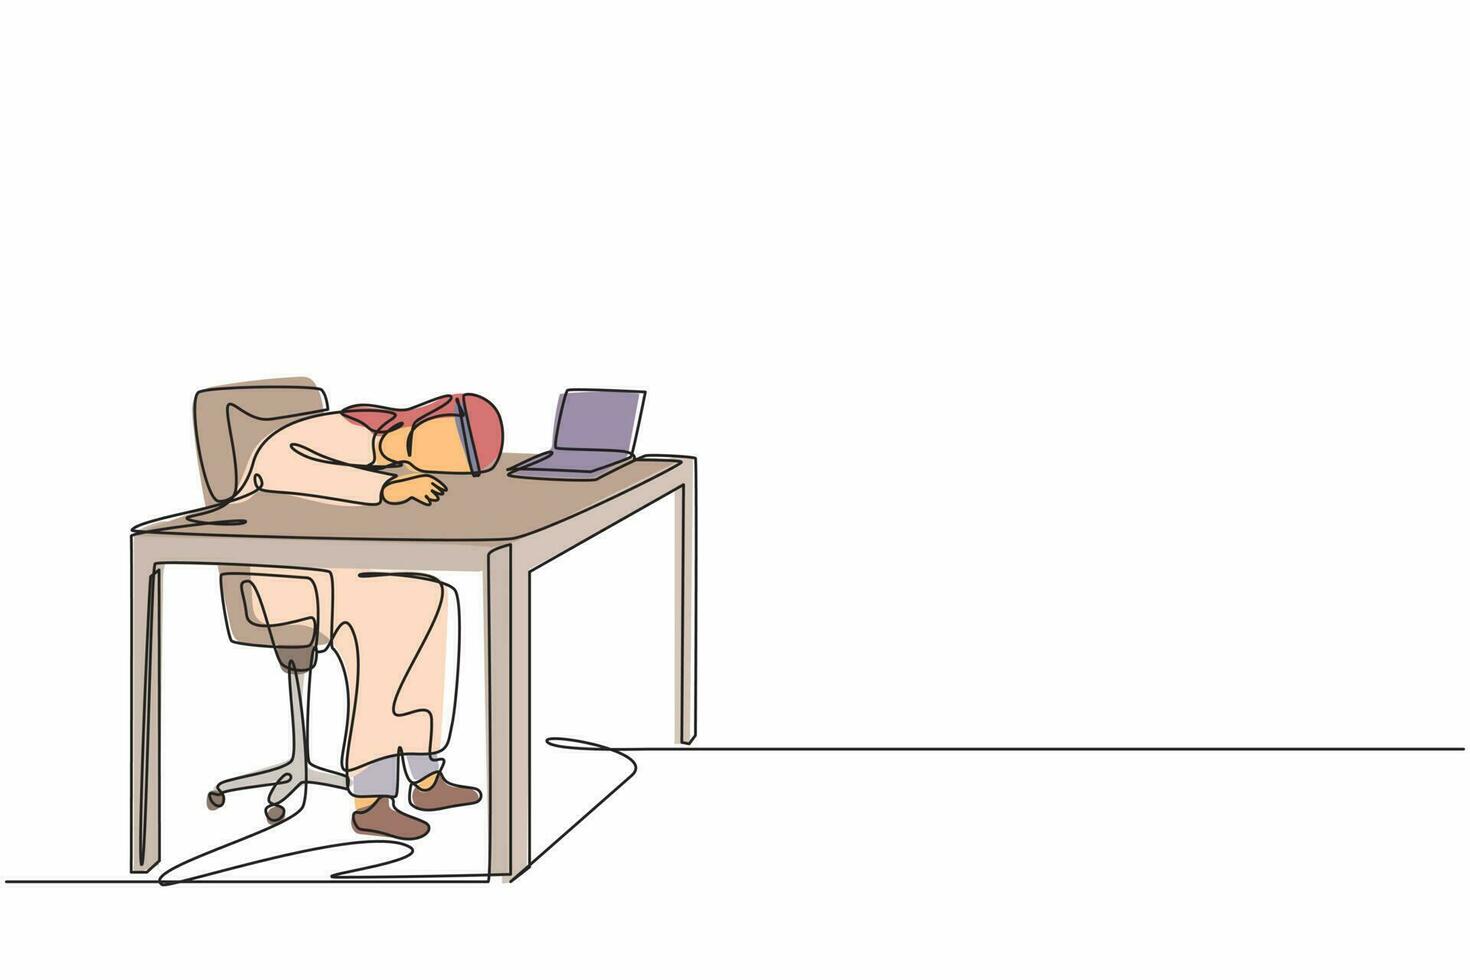 dibujo de una sola línea agotado enfermo cansado gerente árabe en la oficina triste aburrido sentado con la cabeza hacia abajo en la computadora portátil. problemas de salud mental de los trabajadores frustrados. vector gráfico de diseño de línea continua